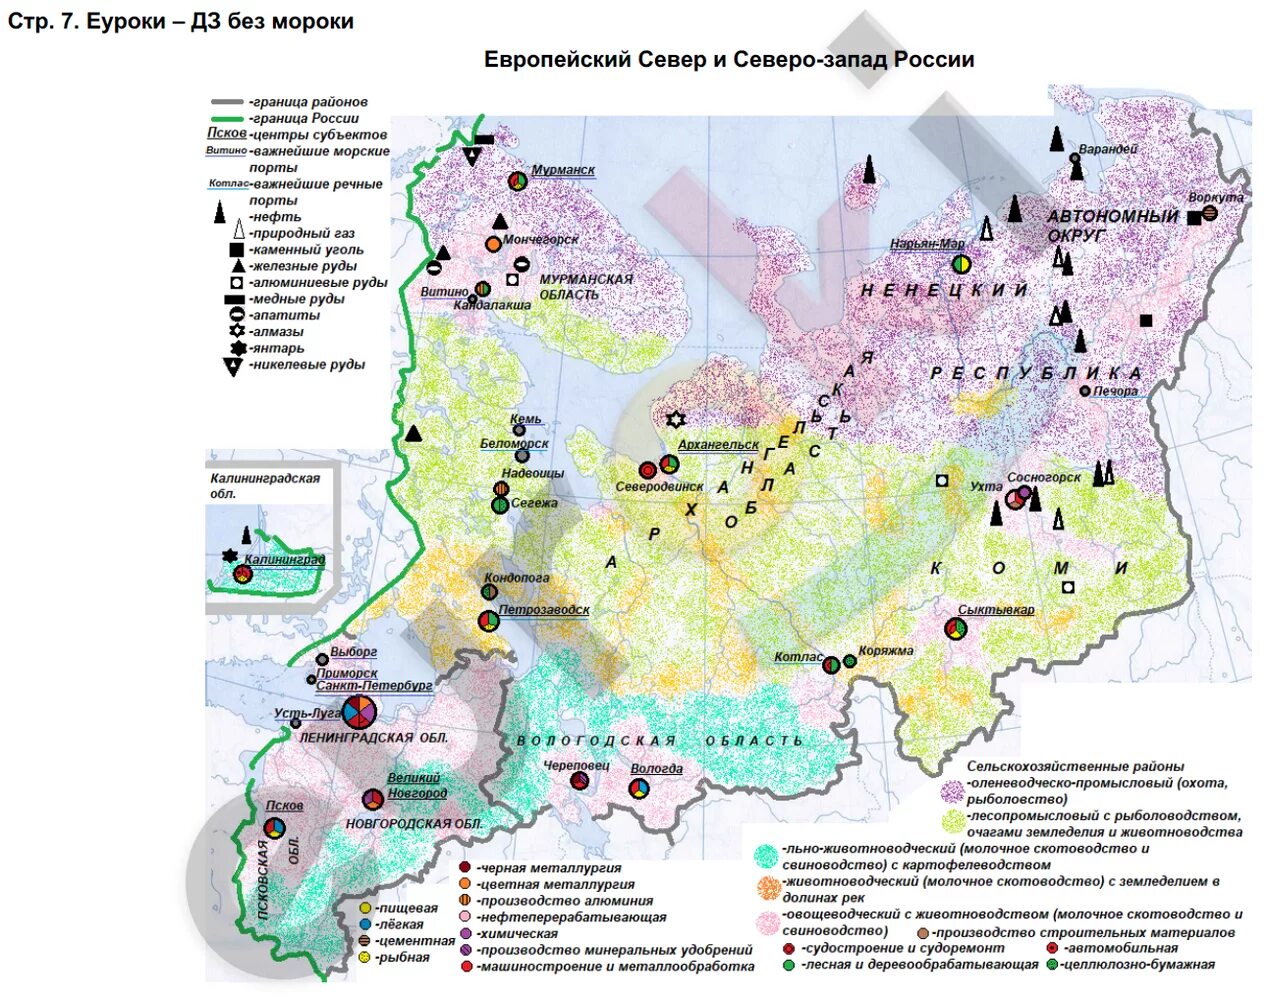 Отрасли специализации центральной россии и сибири. Карта европейского севера и Северо-Запада России контурная карта.